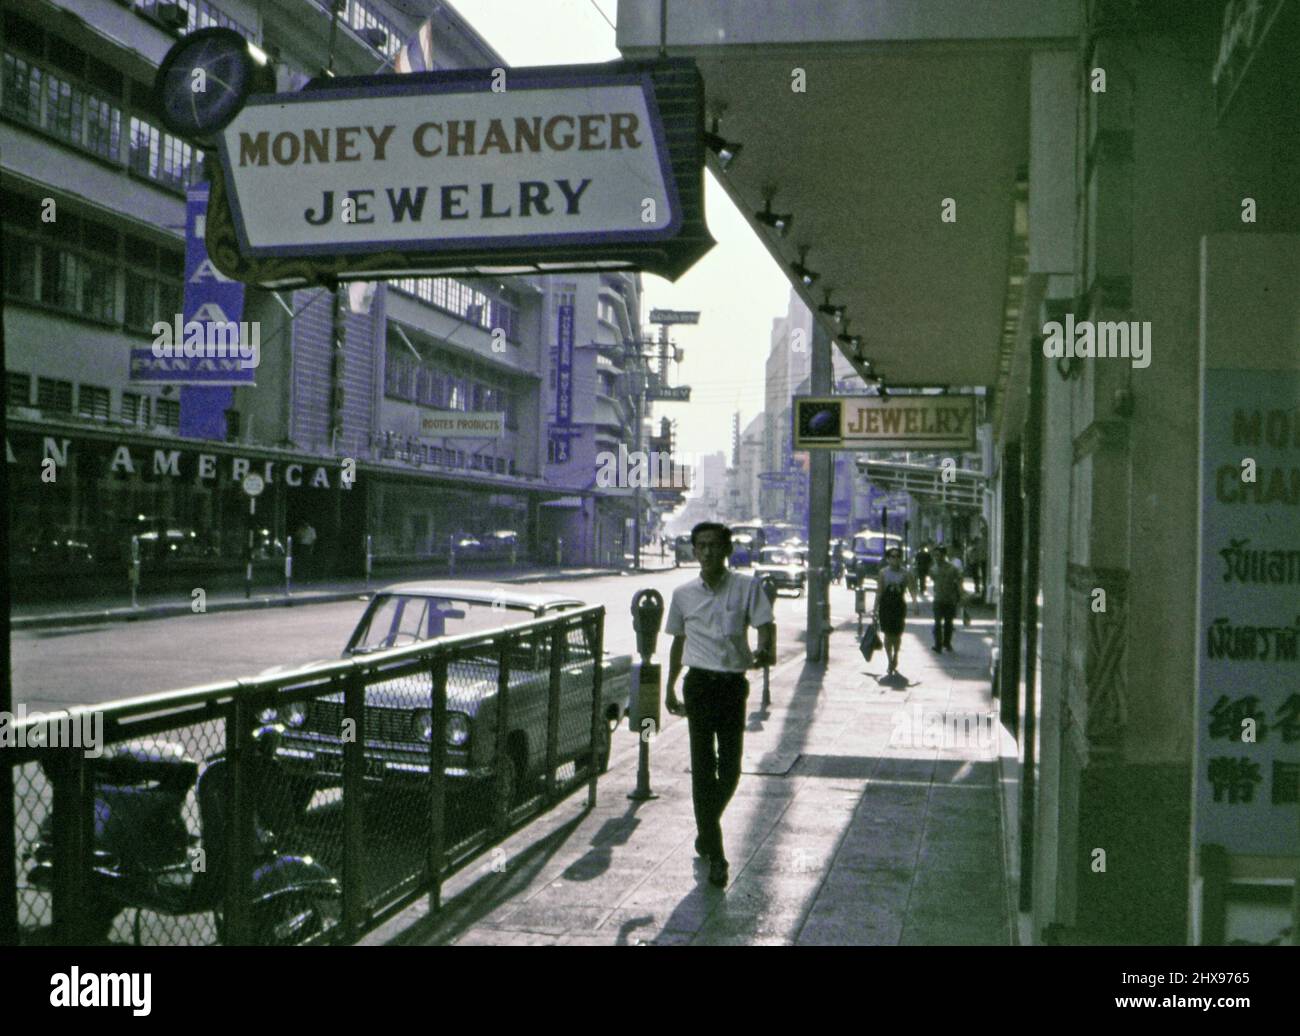 Scène de rue, homme marchant sur le trottoir devant un lieu de change, dans une ville asiatique non identifiée (éventuellement le Japon ou le Vietnam) à la fin de 60s ou au début de 1970s) Banque D'Images